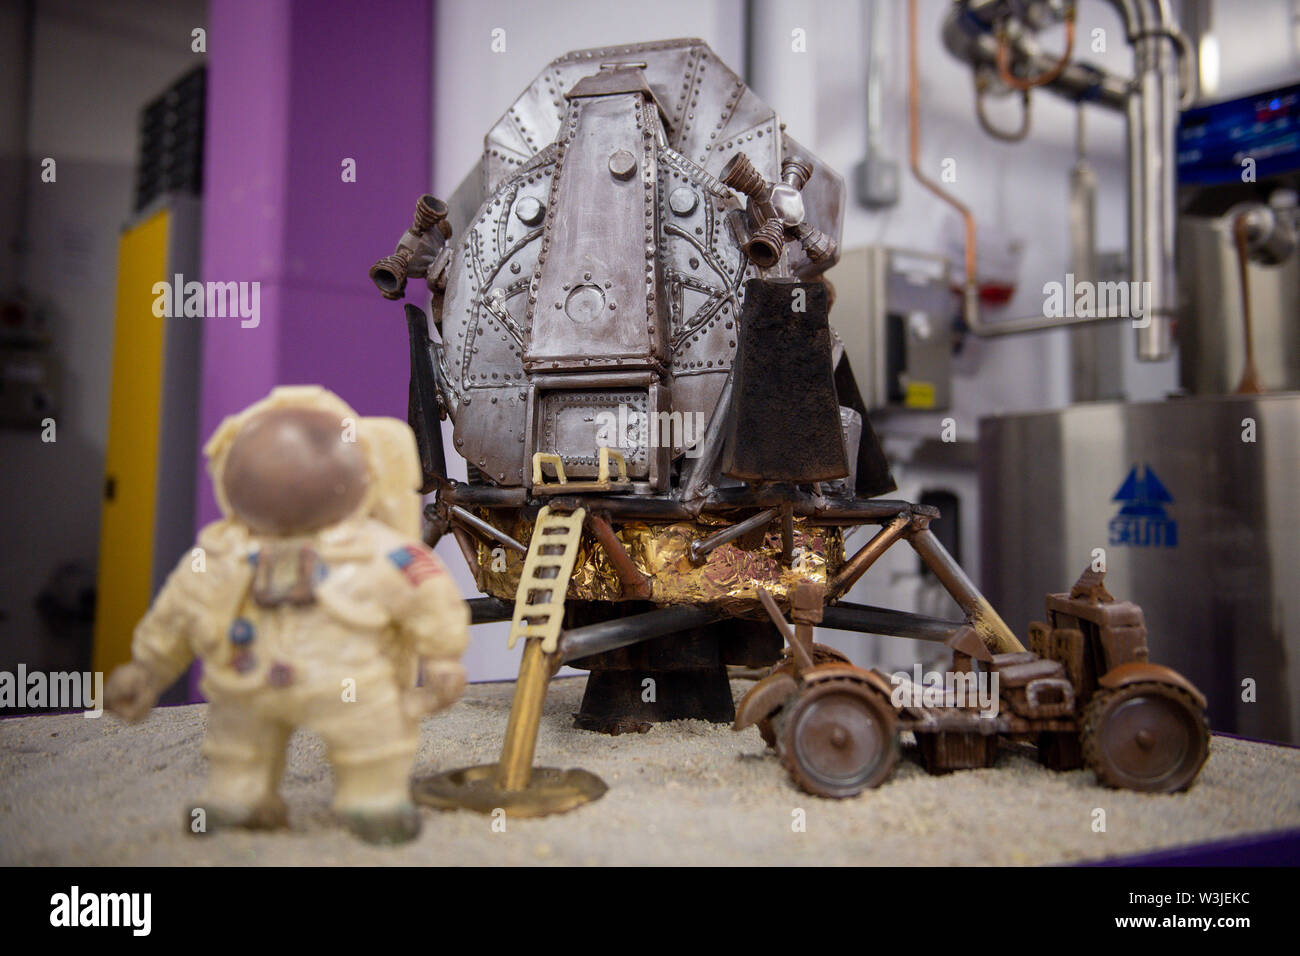 Chocolat une recréation de l'alunissage d'Apollo 11 à Cadbury World à Birmingham pour marquer 50 ans jour pour jour, que la mission des Etats-Unis d'envoyer des hommes sur la Lune. Banque D'Images